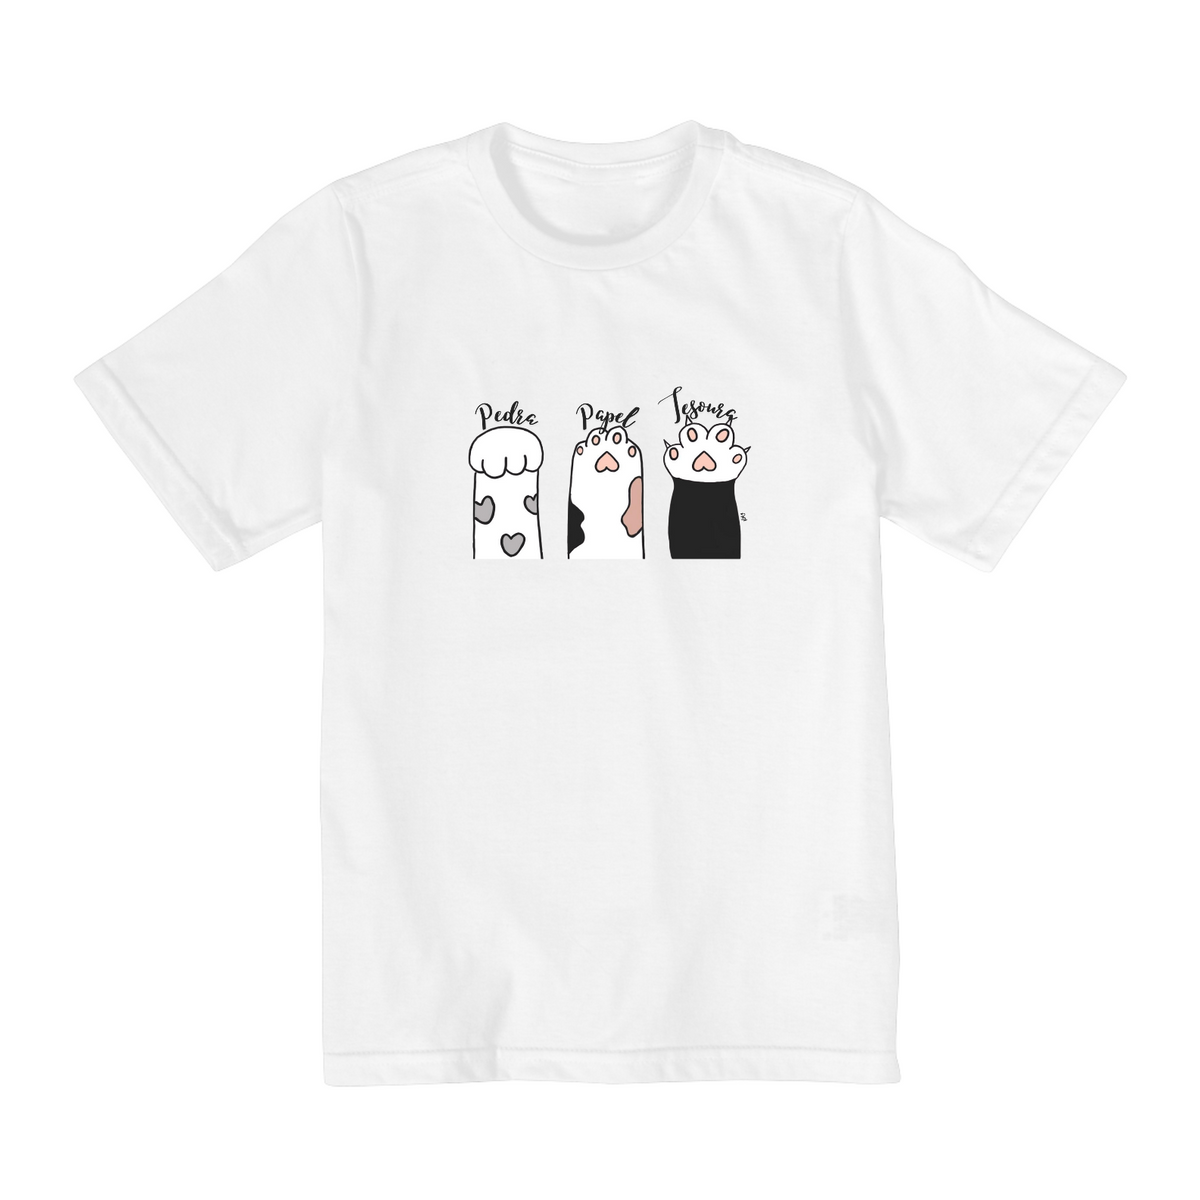 Nome do produto: Camiseta Infantil (2 a 8 anos) - Pedra, papel, tesoura